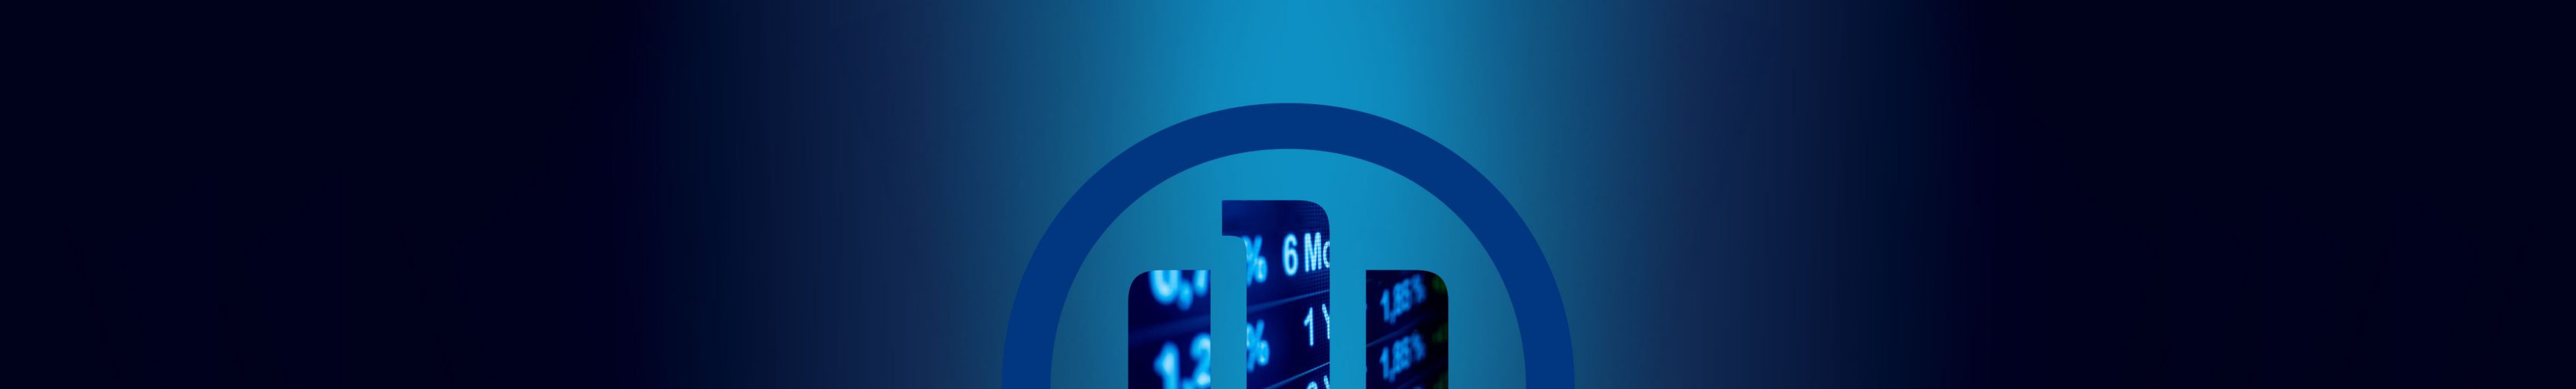 Allianz 3D-Adler logo auf einem dunklen Hintergrund mit Farbverlauf, Ausschnitt von Börsentafel Zahlenwerten als Logo-Hintergrundfüllung